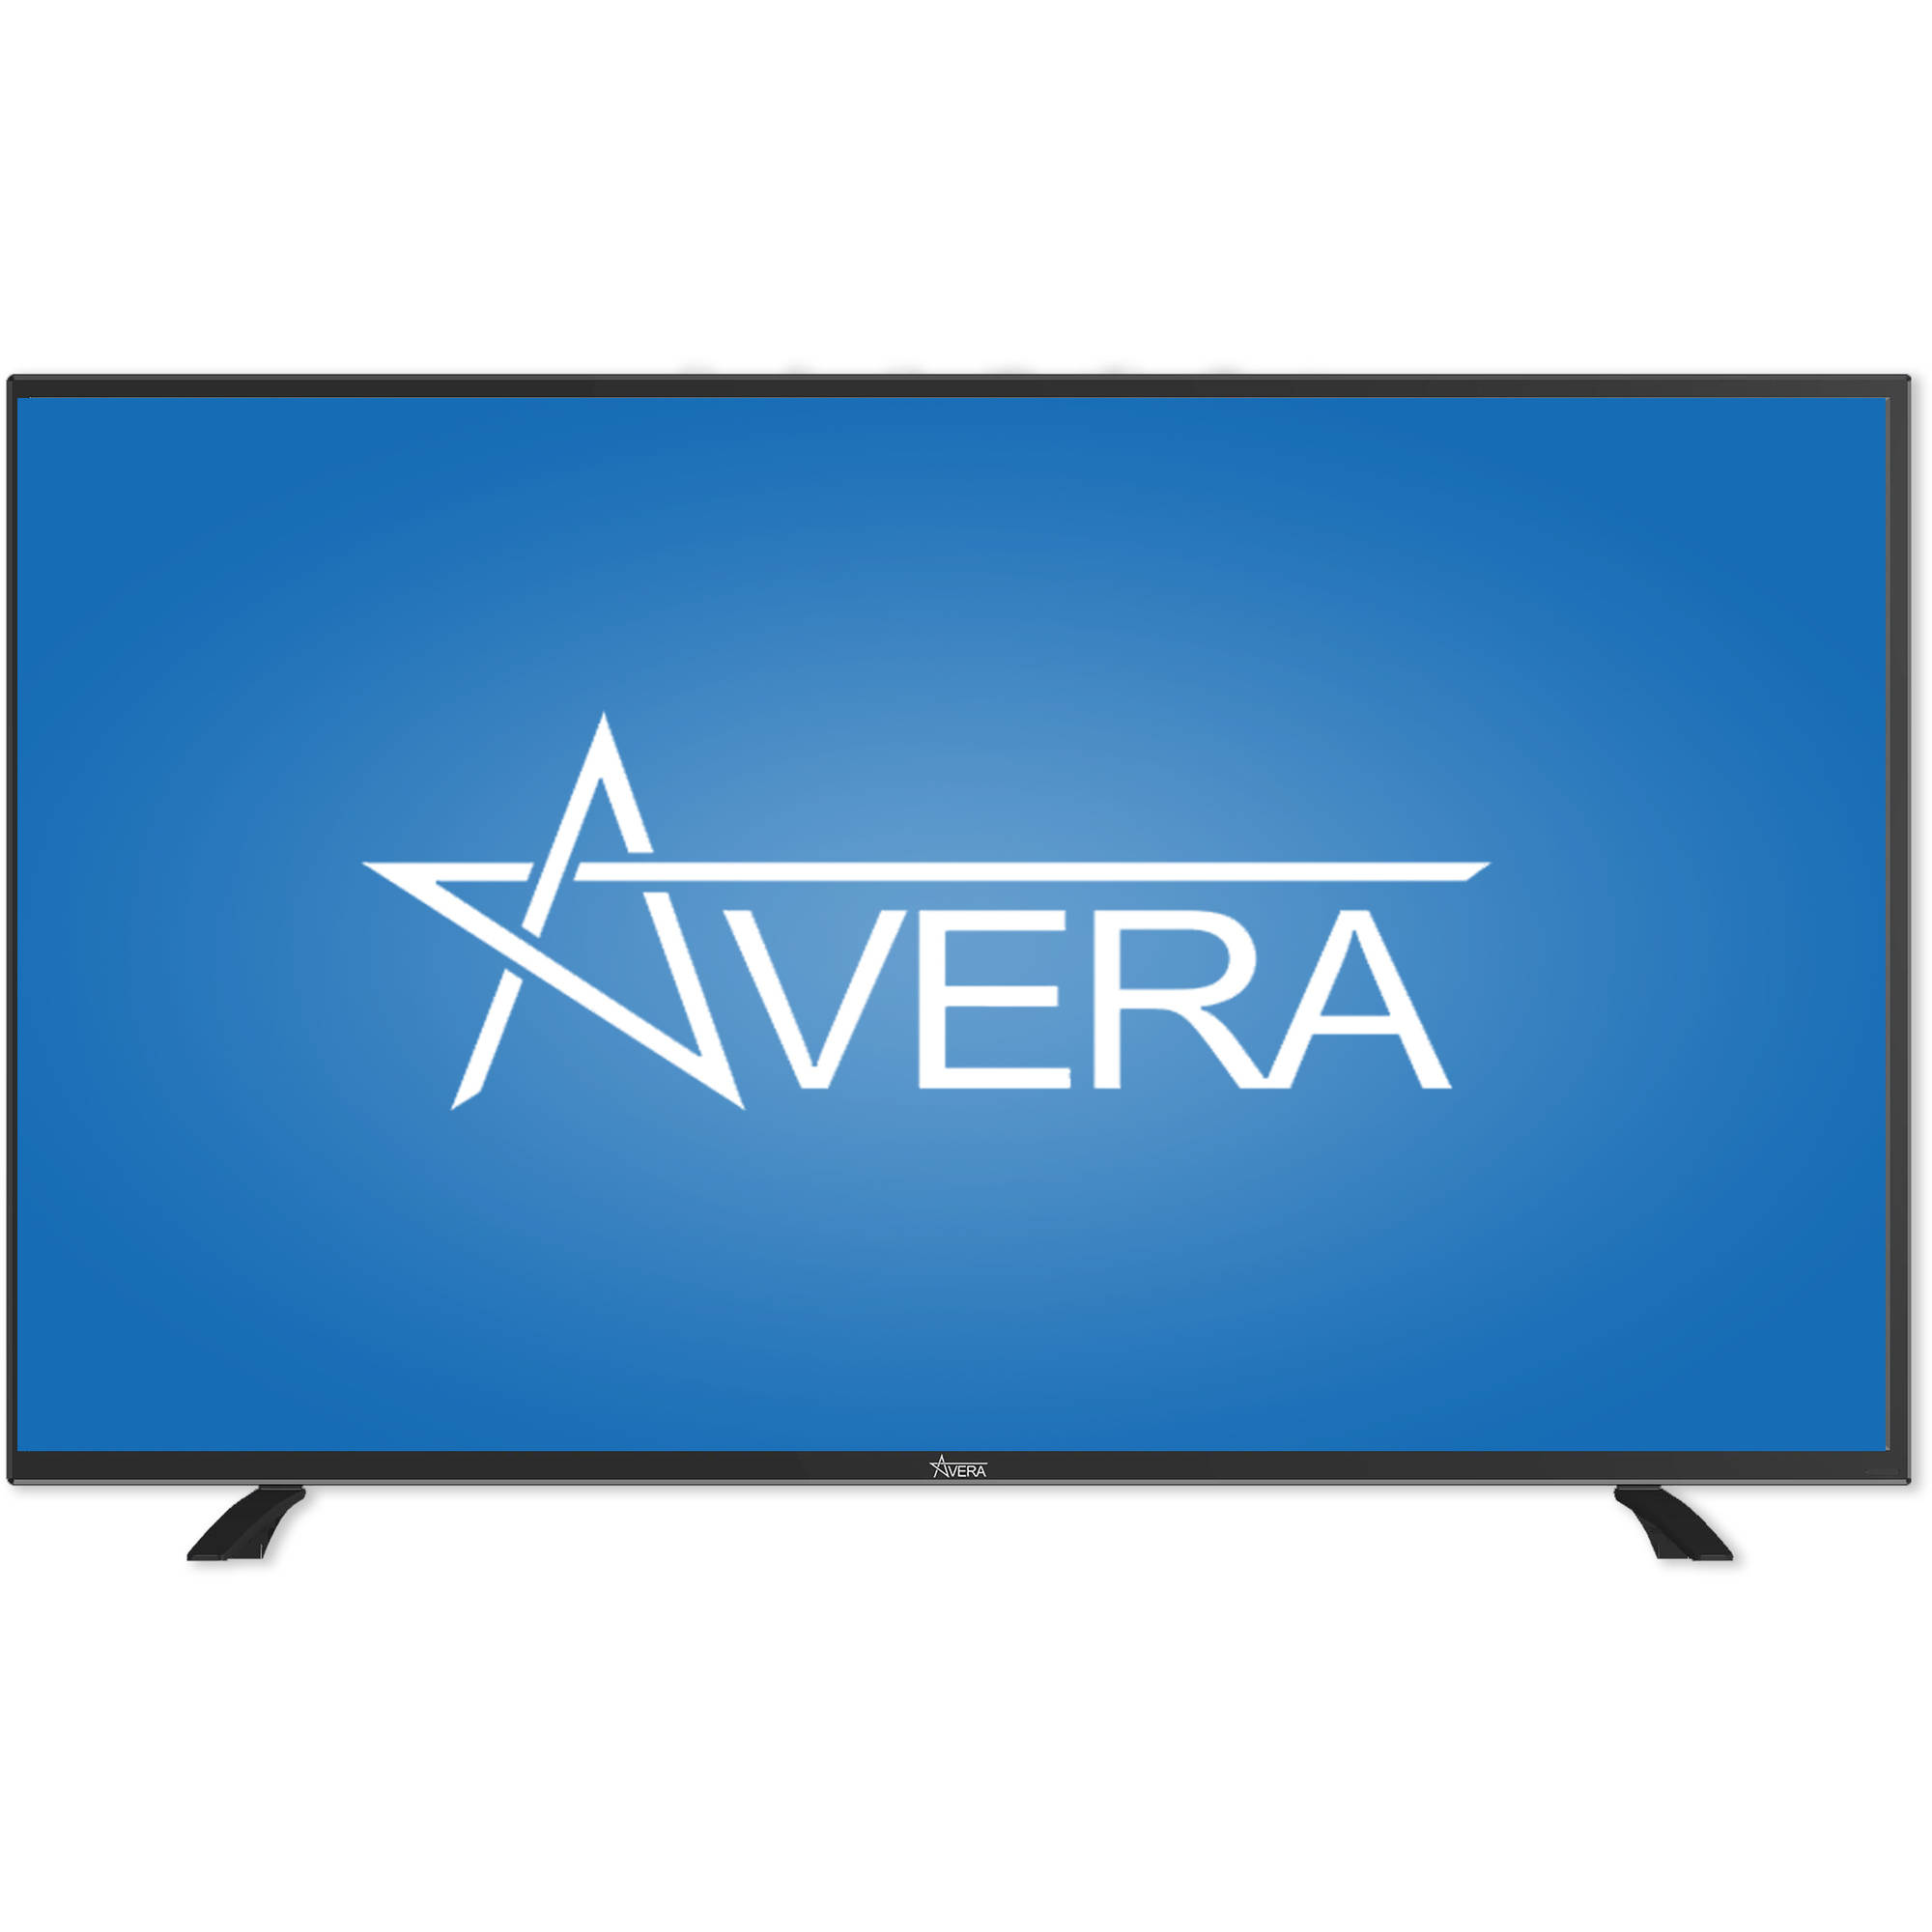 Avera 55" Class FHD (1080P) LED TV (55AER10) - image 1 of 8